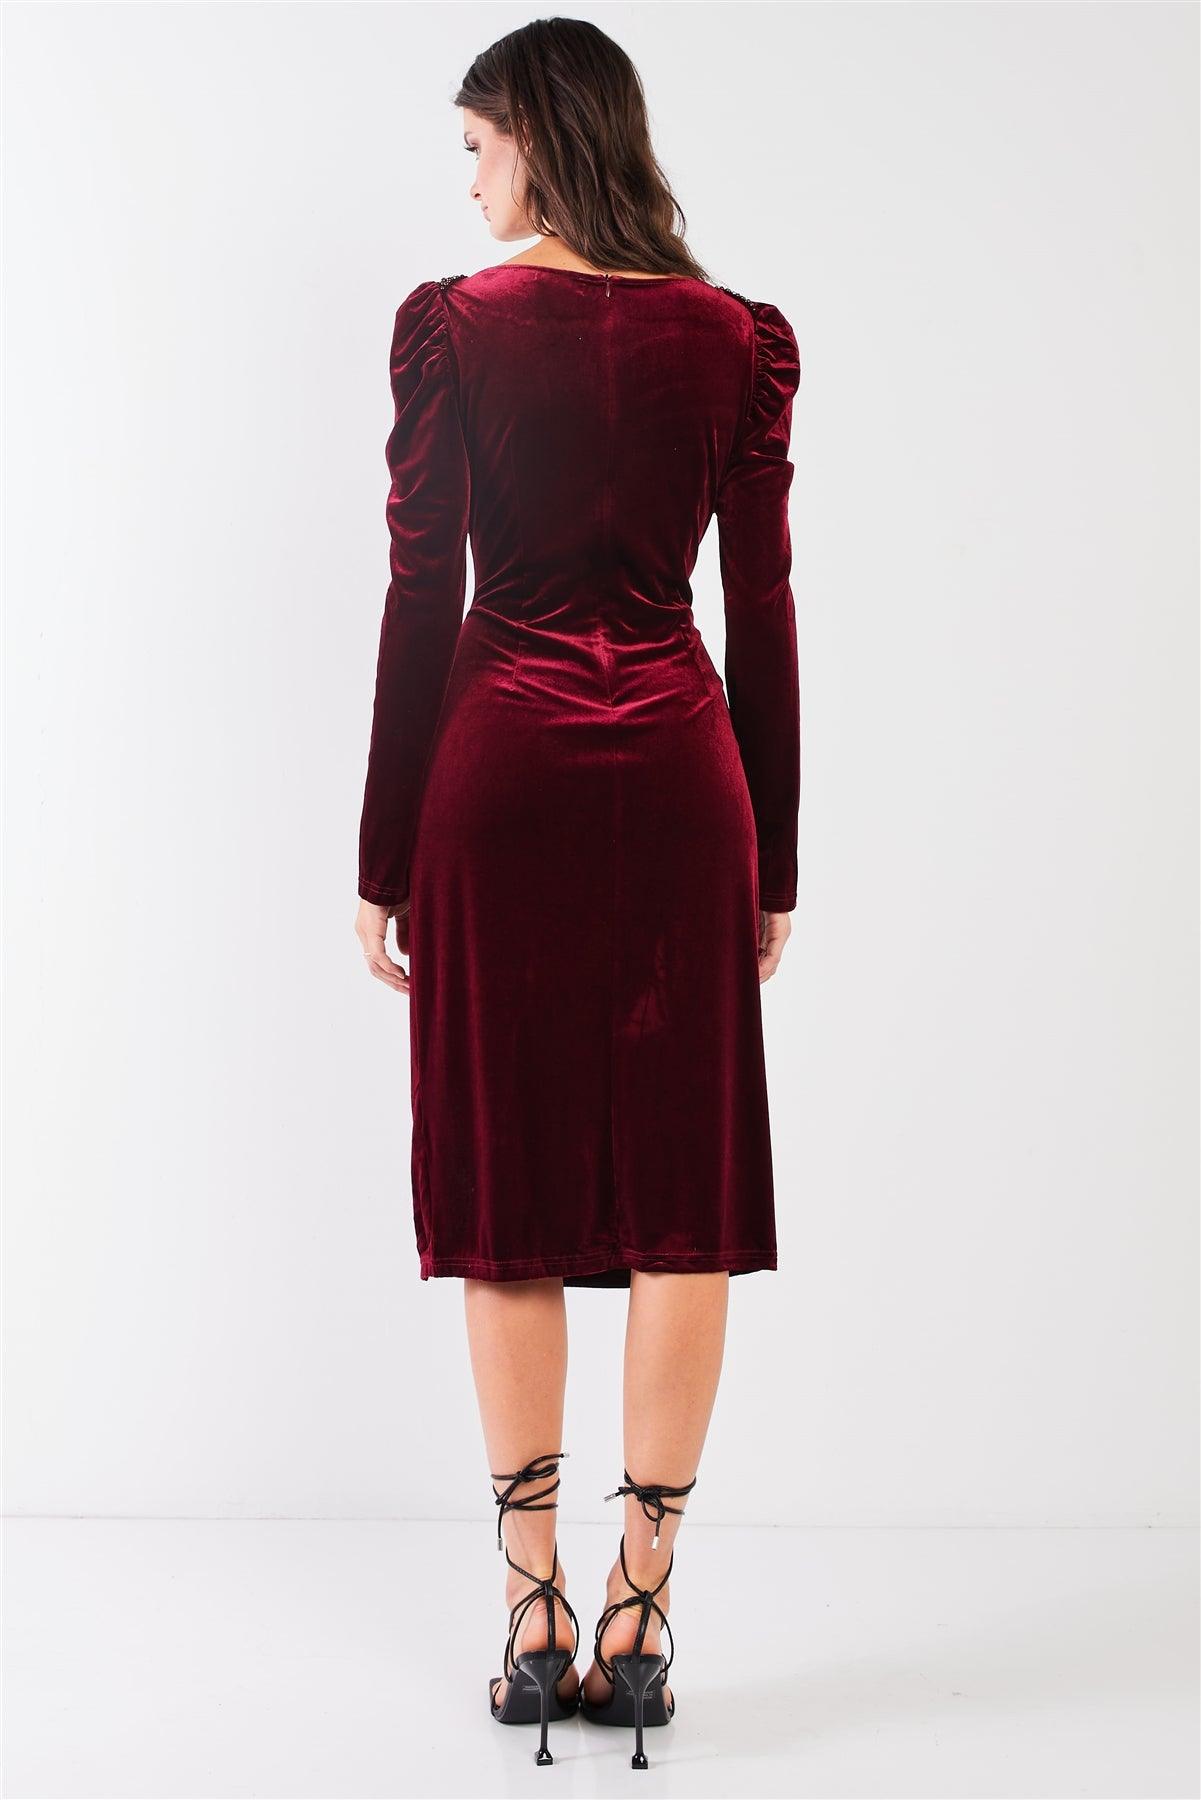 Burgundy Velvet Beaded Neckline Trim Juliet Long Sleeve Side Slit Midi Dress /2-2-2